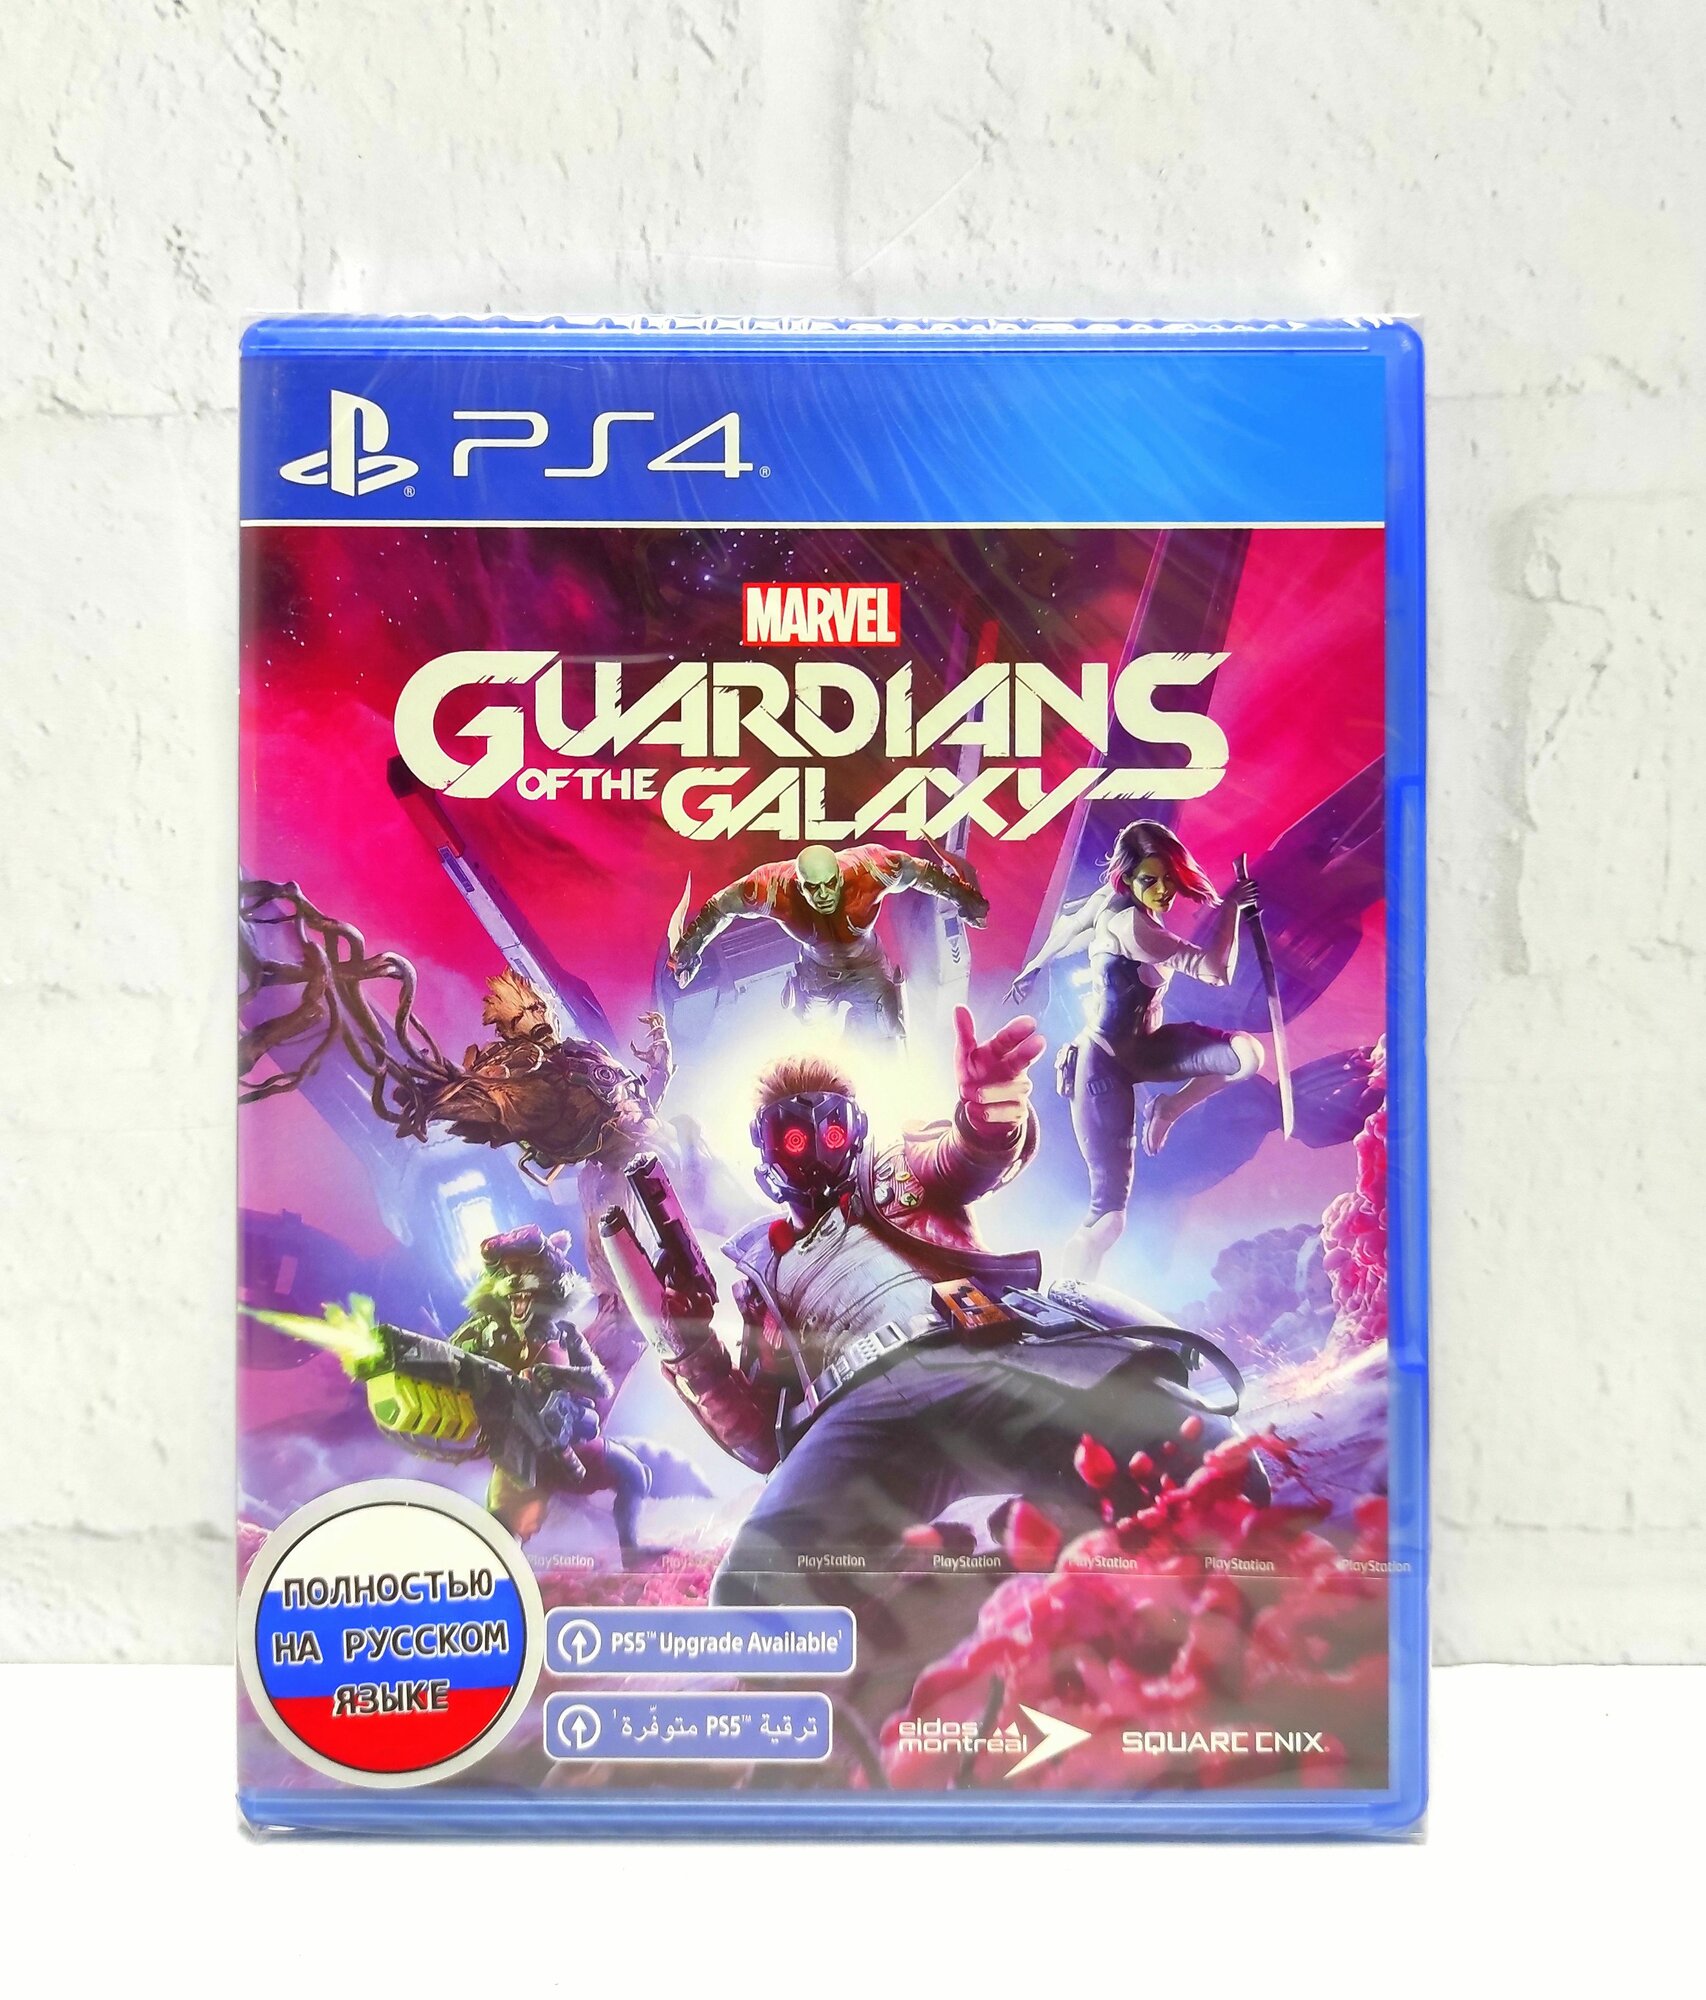 Стражи Галактики Marvel Guardians of the Galaxy Полностью на русском Видеоигра на диске PS4 / PS5